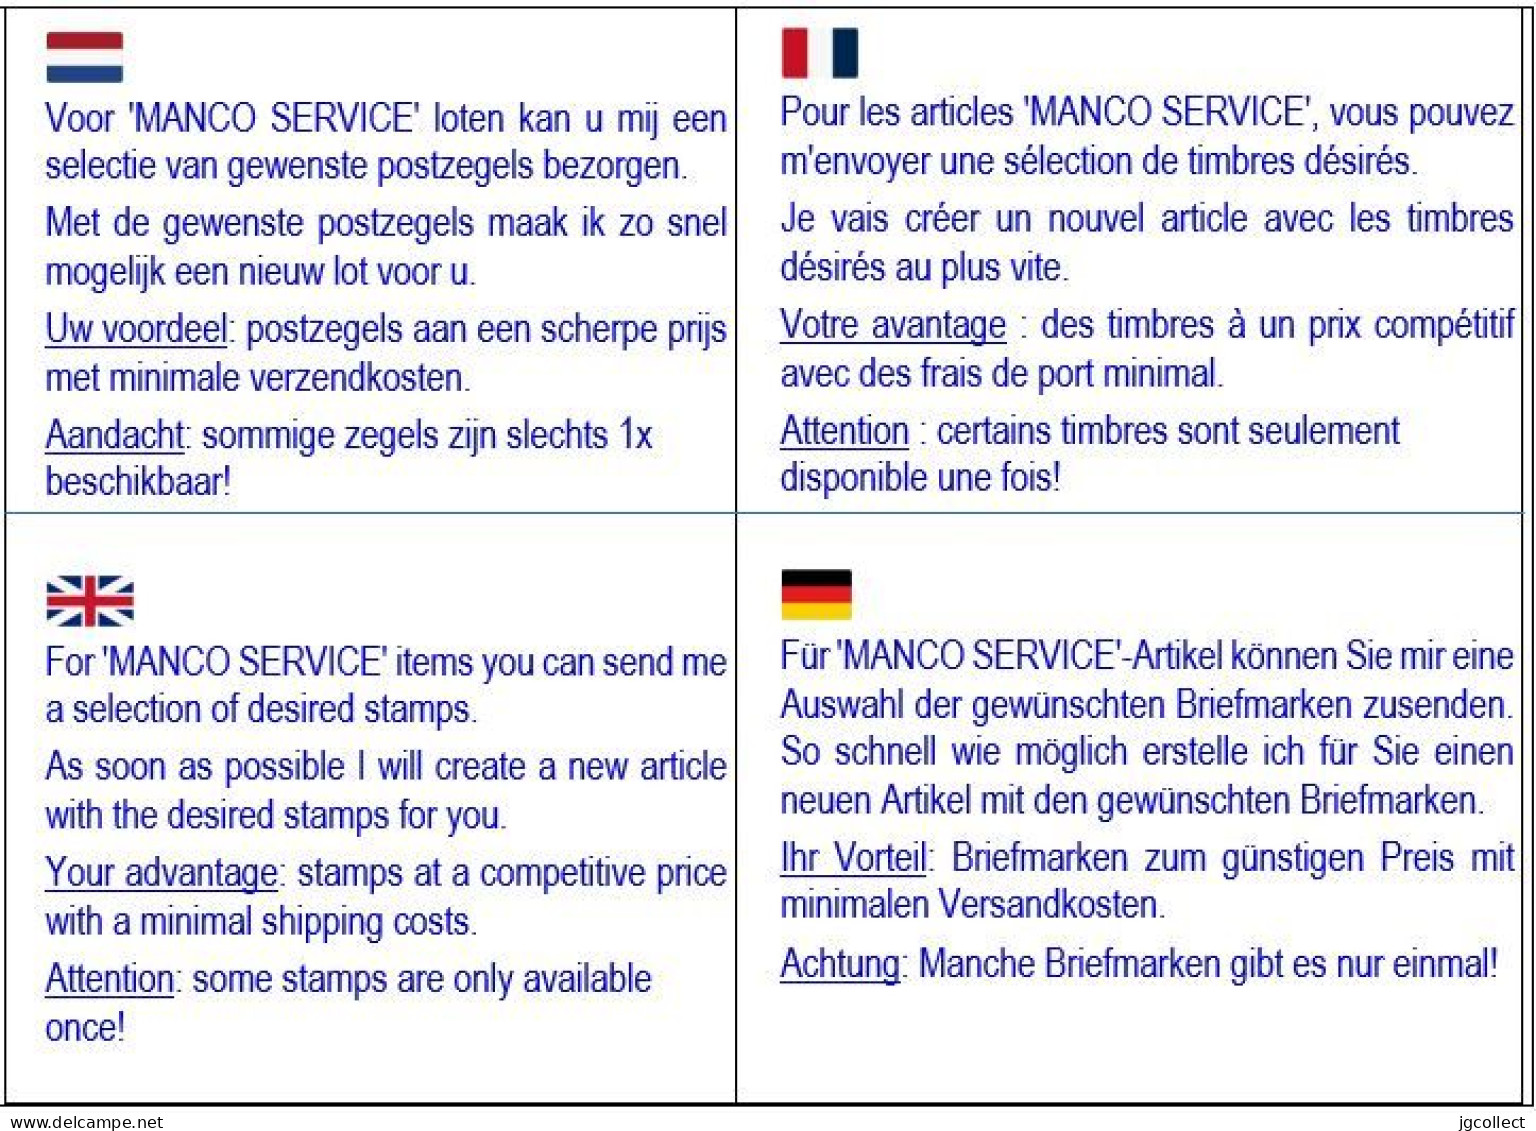 MANCO Service: Typografisch 1906-12 Wapenschild - Sobreimpresos 1906-12 (Armarios)